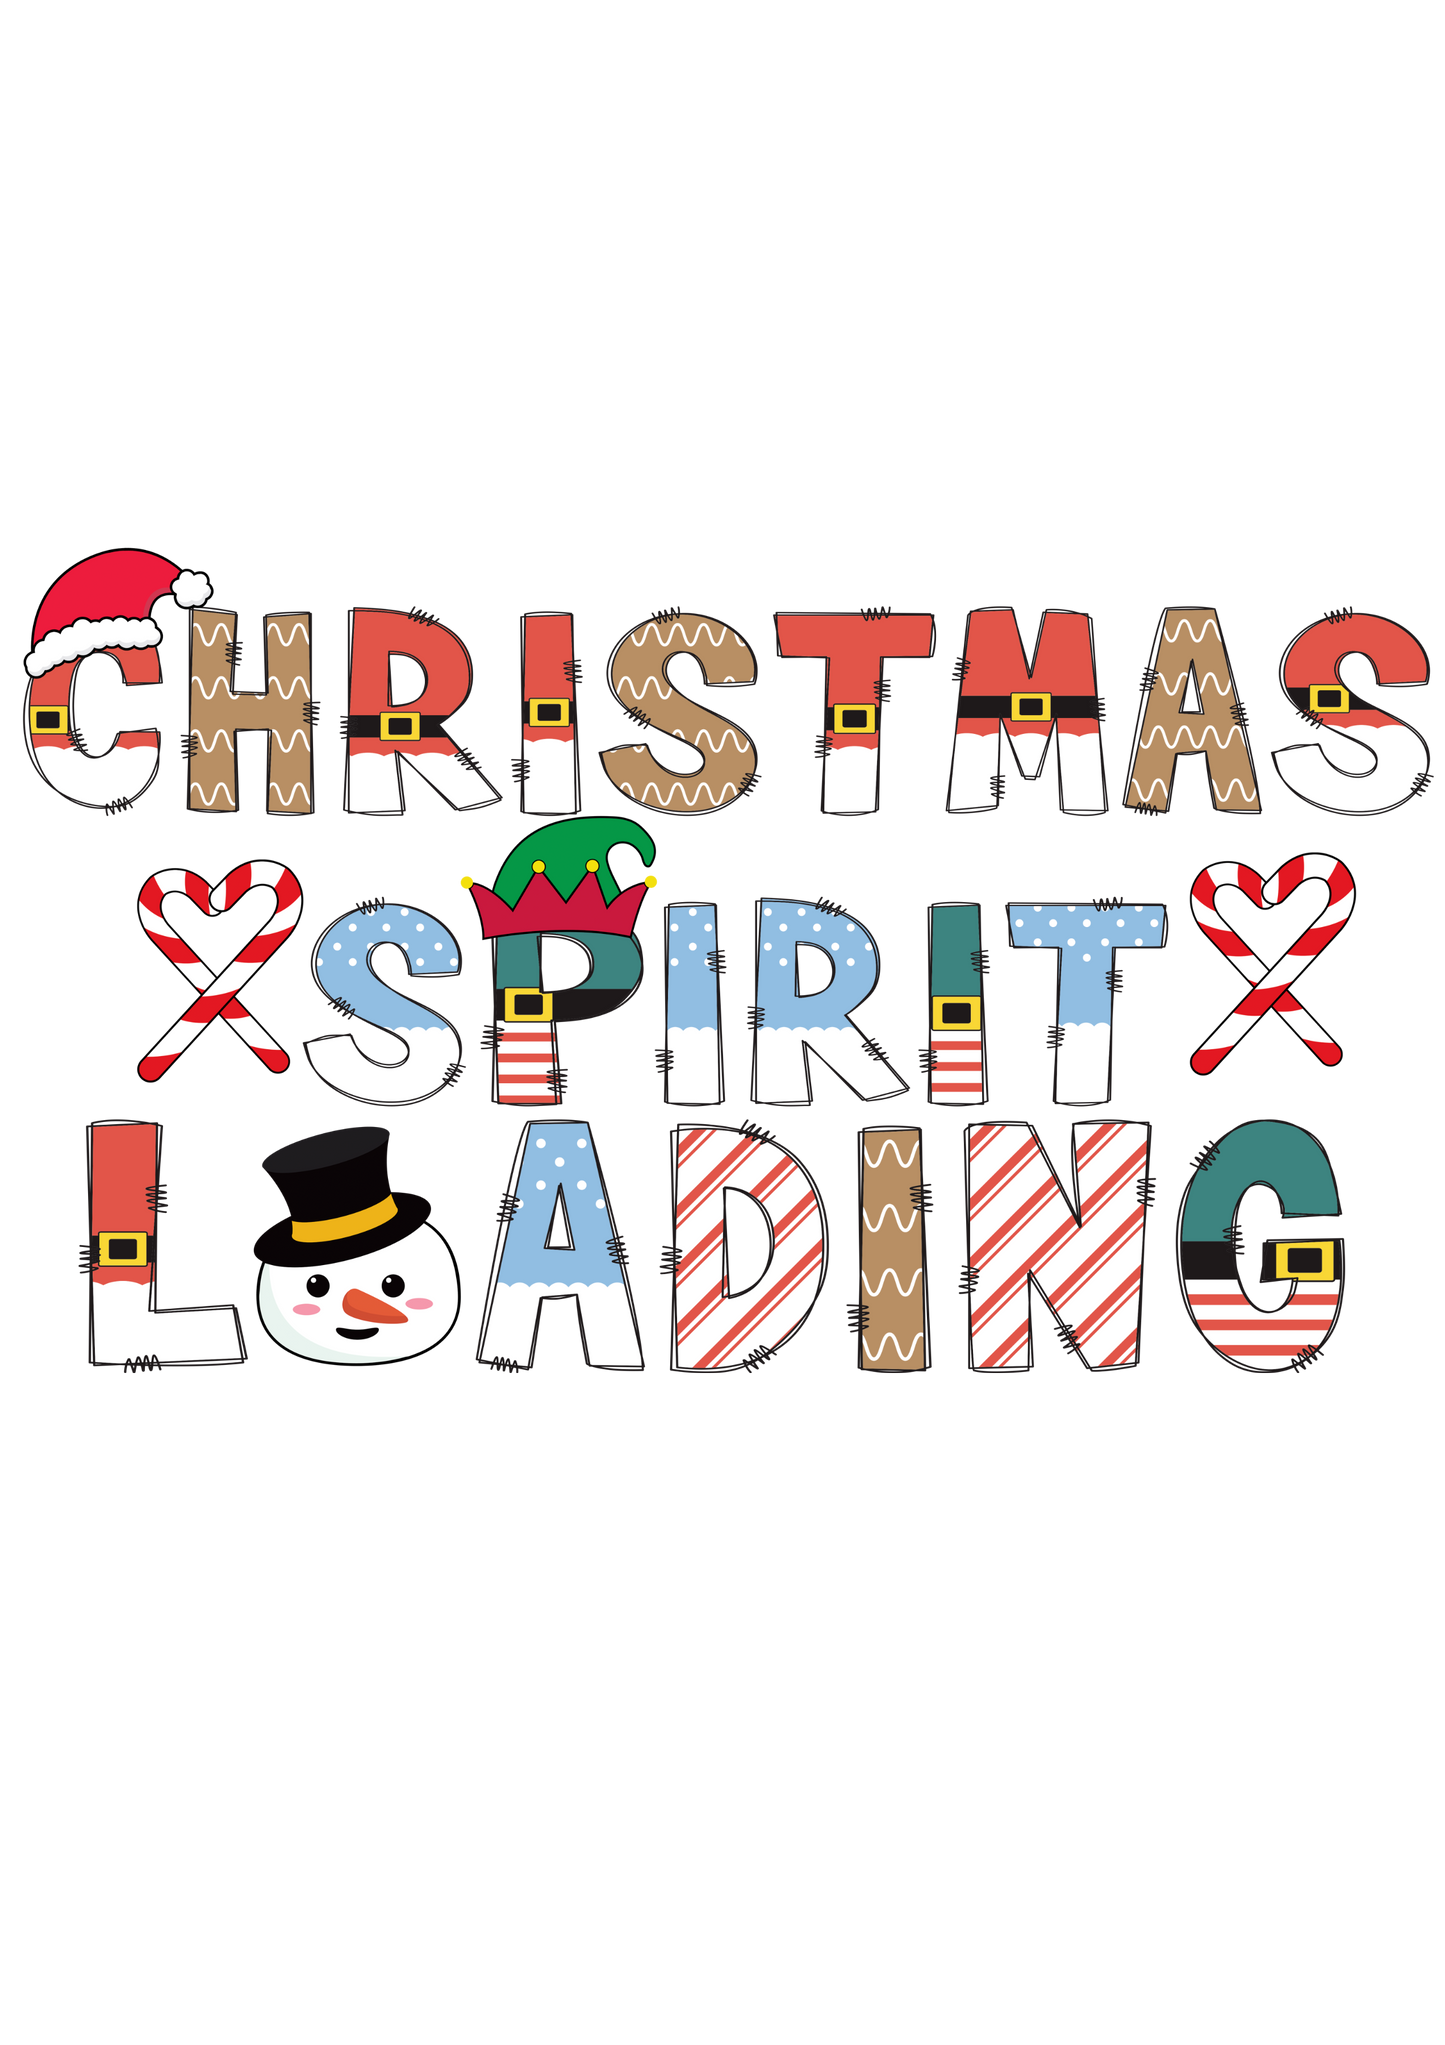 Christmas Spirit Loading